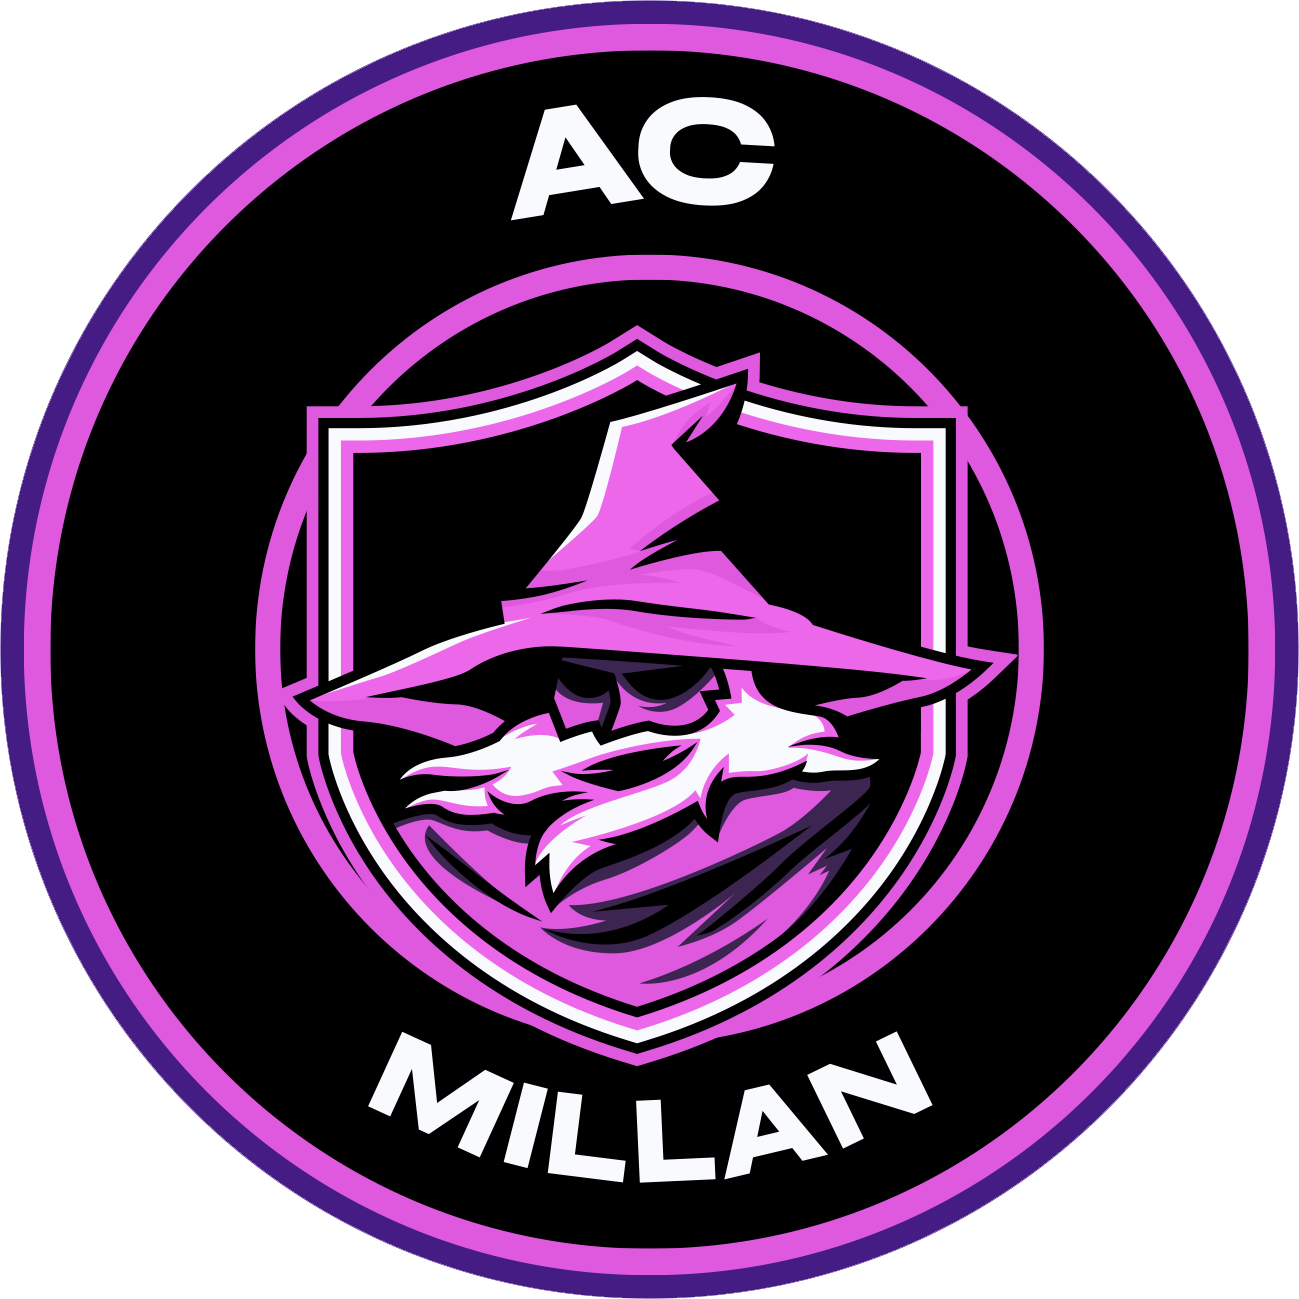 AC Millan